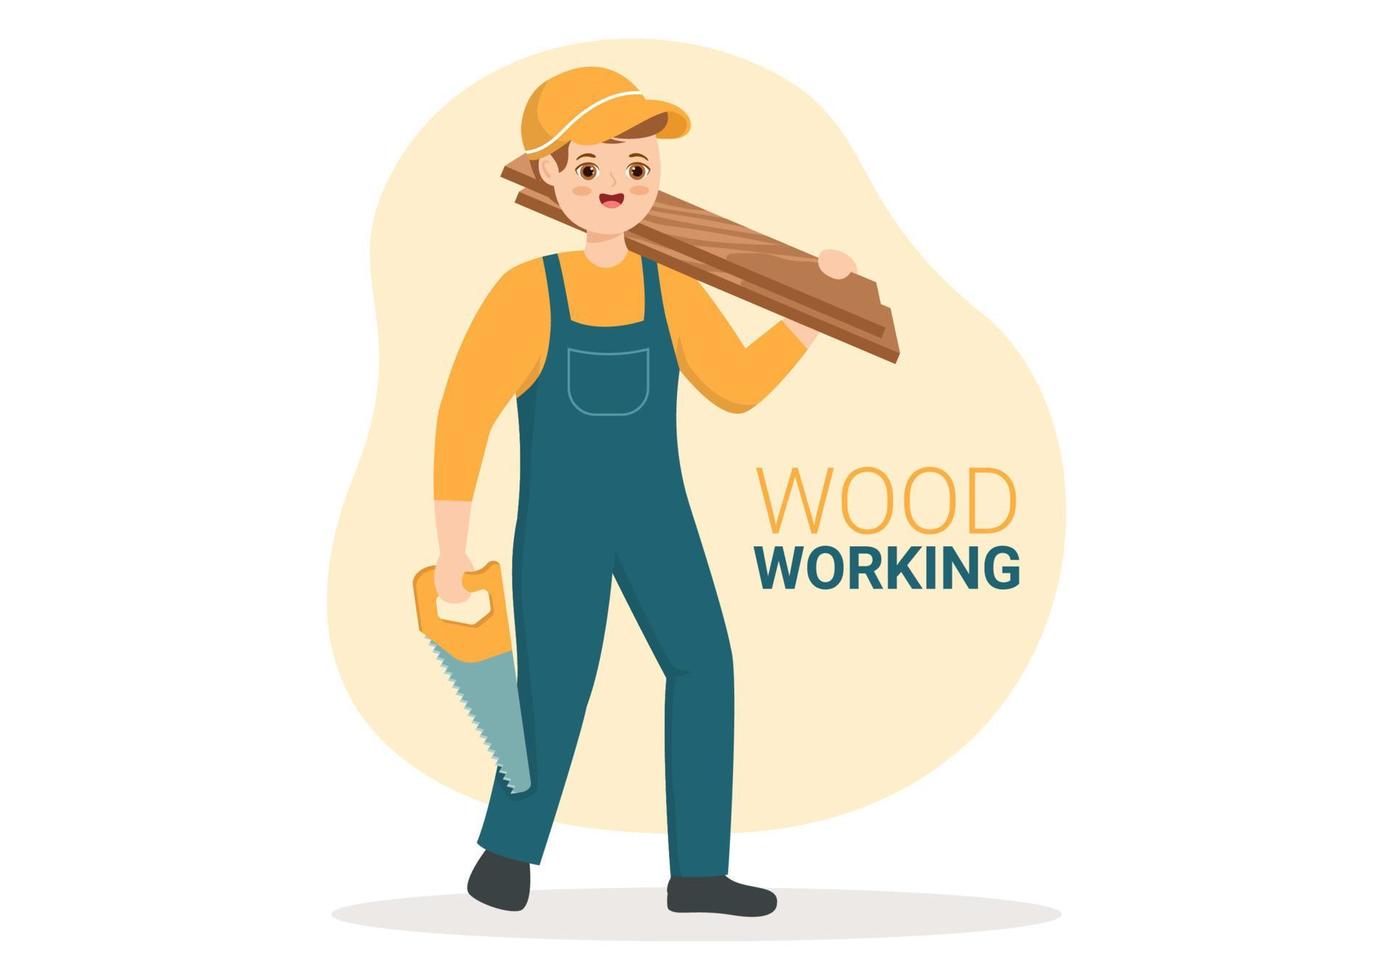 carpintería con corte de madera por artesanos modernos y trabajadores que usan herramientas en una ilustración de plantilla dibujada a mano de caricatura plana vector